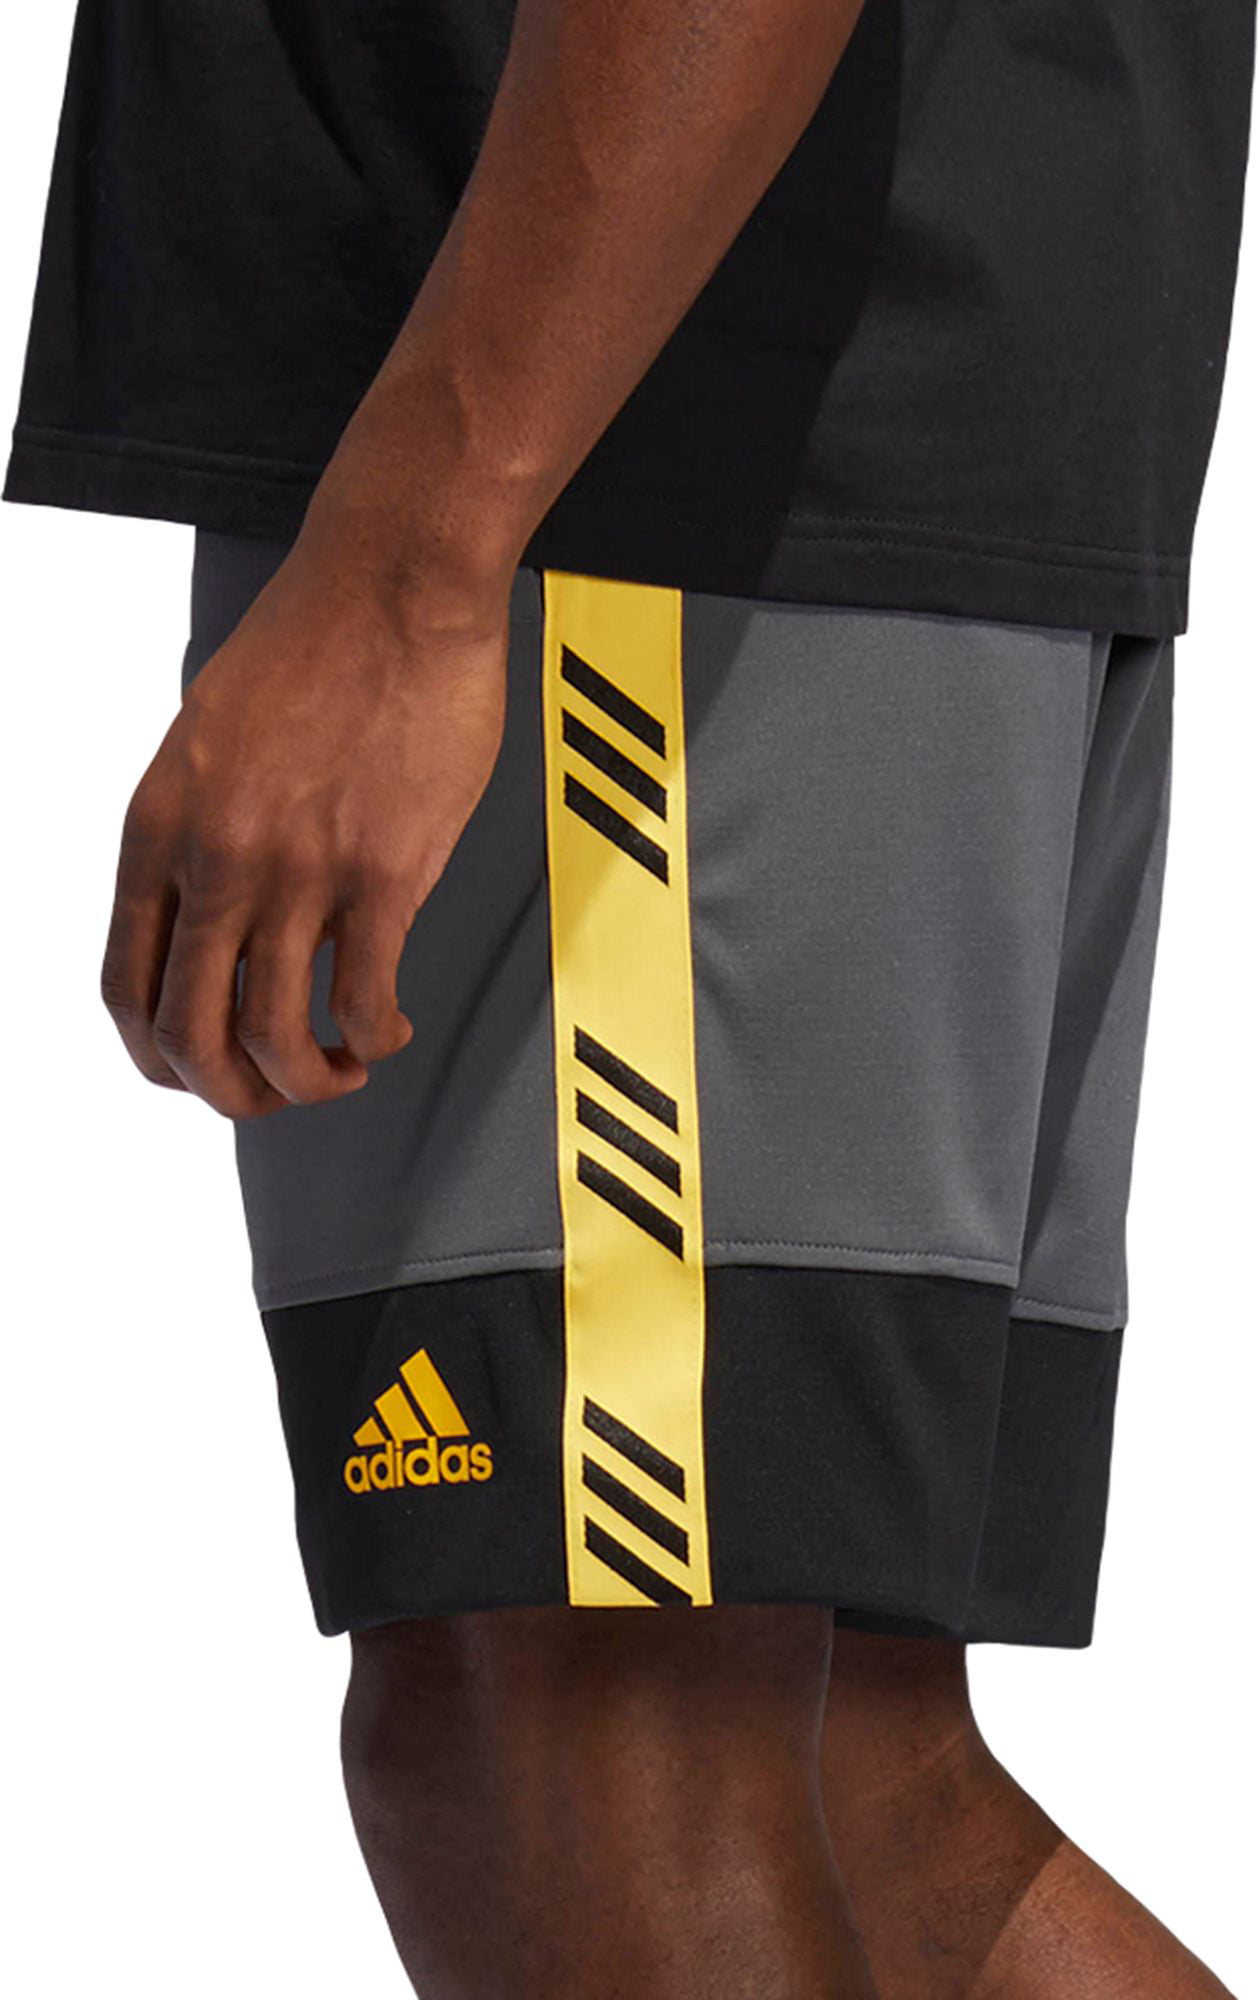 adidas pro madness basketball shorts